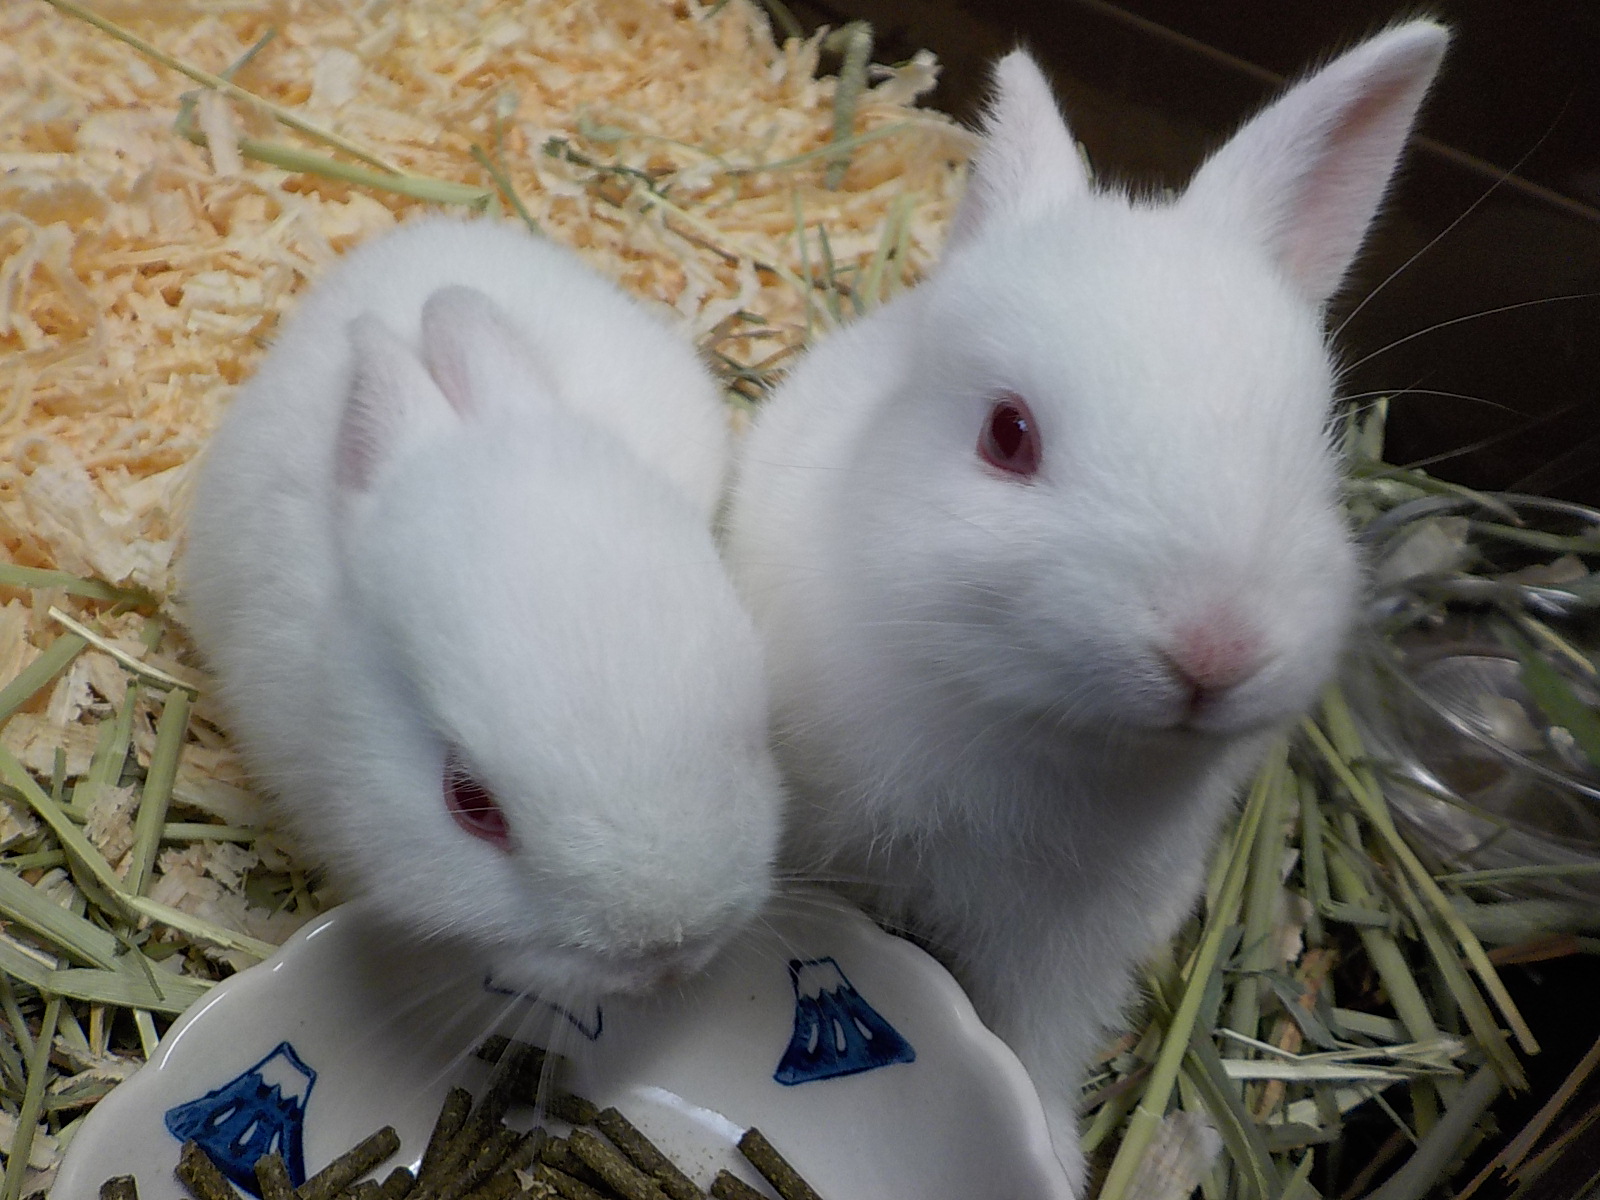 ウサギを通じて生き物の大切さを学ぶ うさちゃん交流プロジェクト 始動 ぎふ清流里山公園 太田小学校よりウサギを譲渡 Newscast